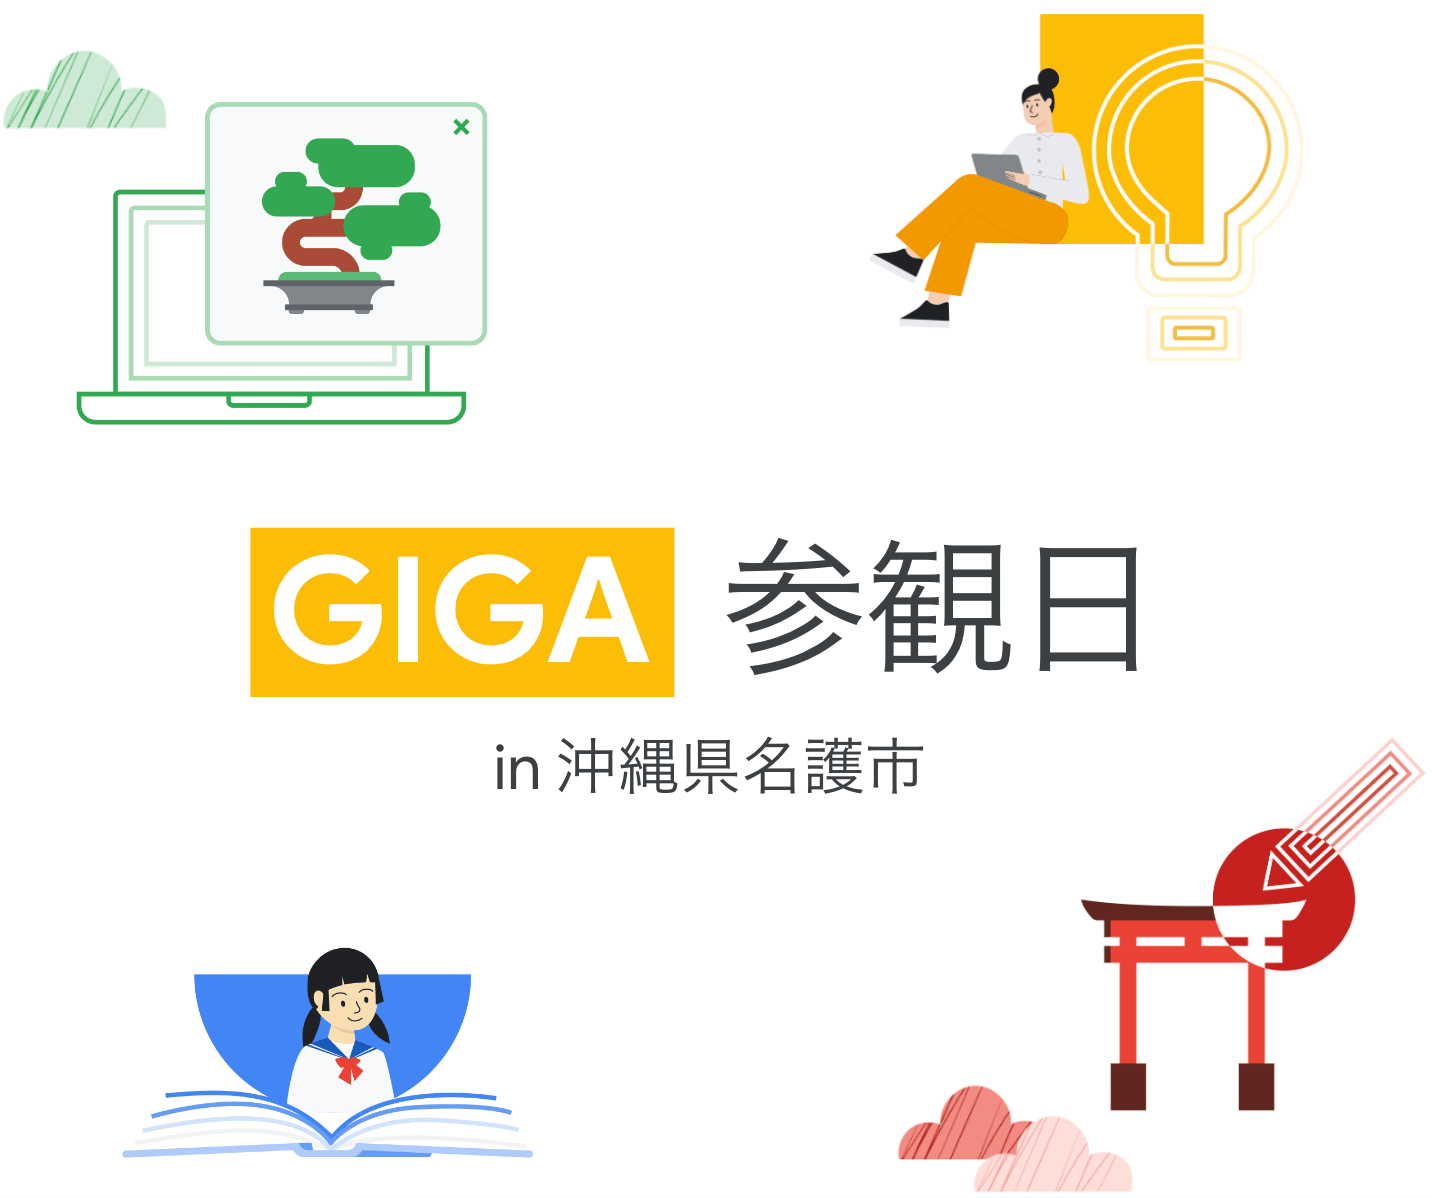 [Google for Education] GIGA 参観日 in 沖縄県名護市